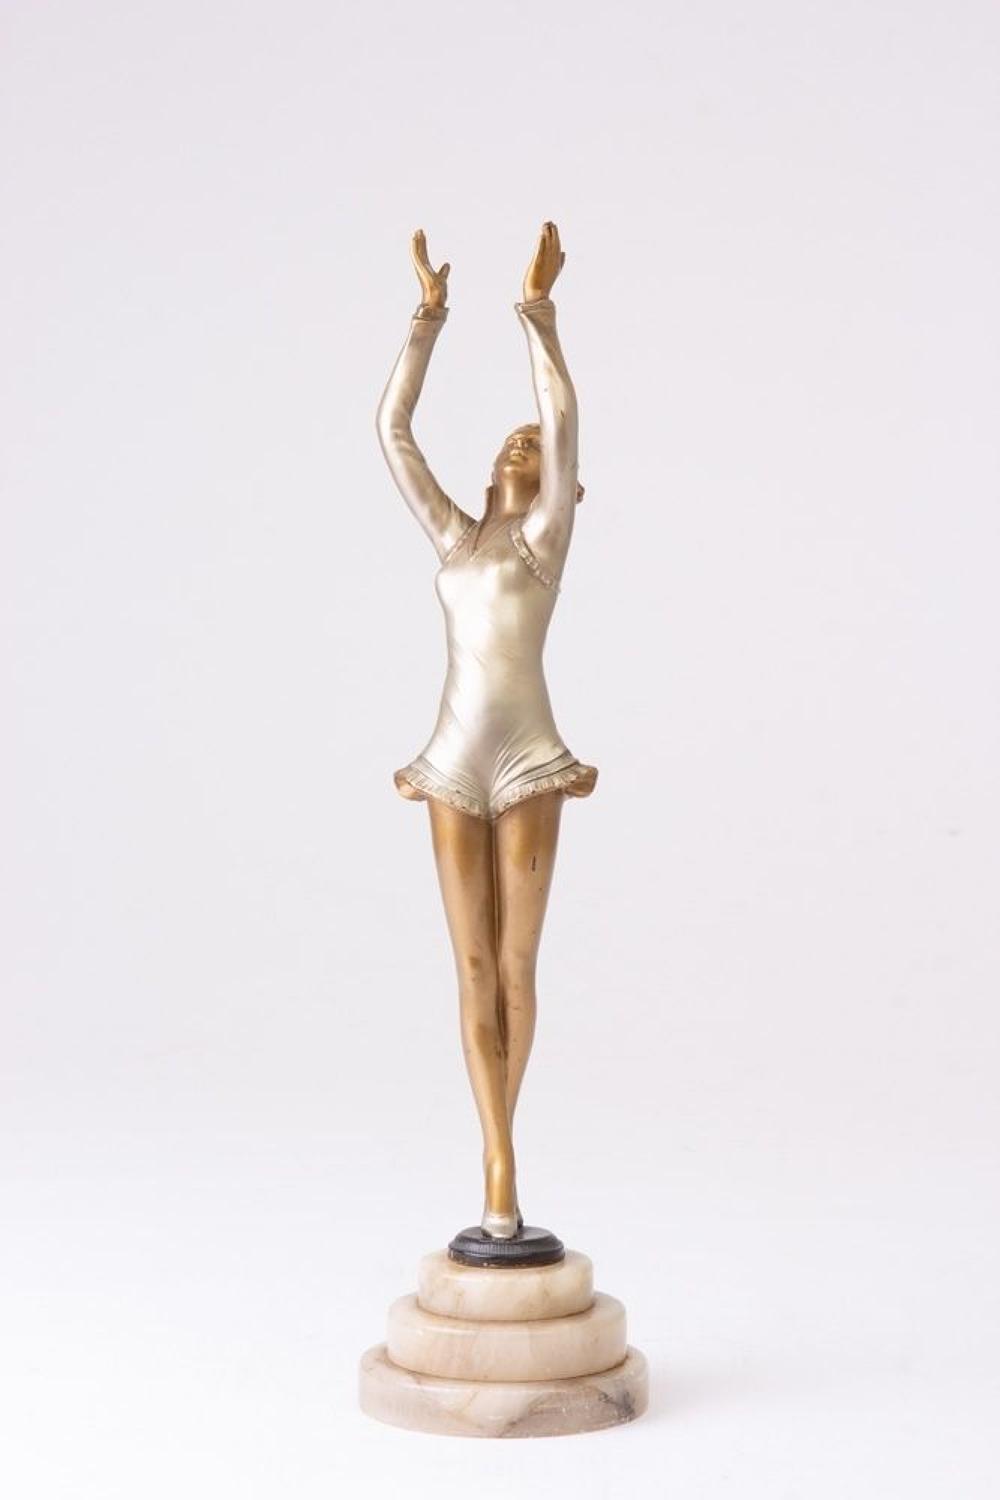 Art Deco Lady's Figure by Lorenzyl c.1920s